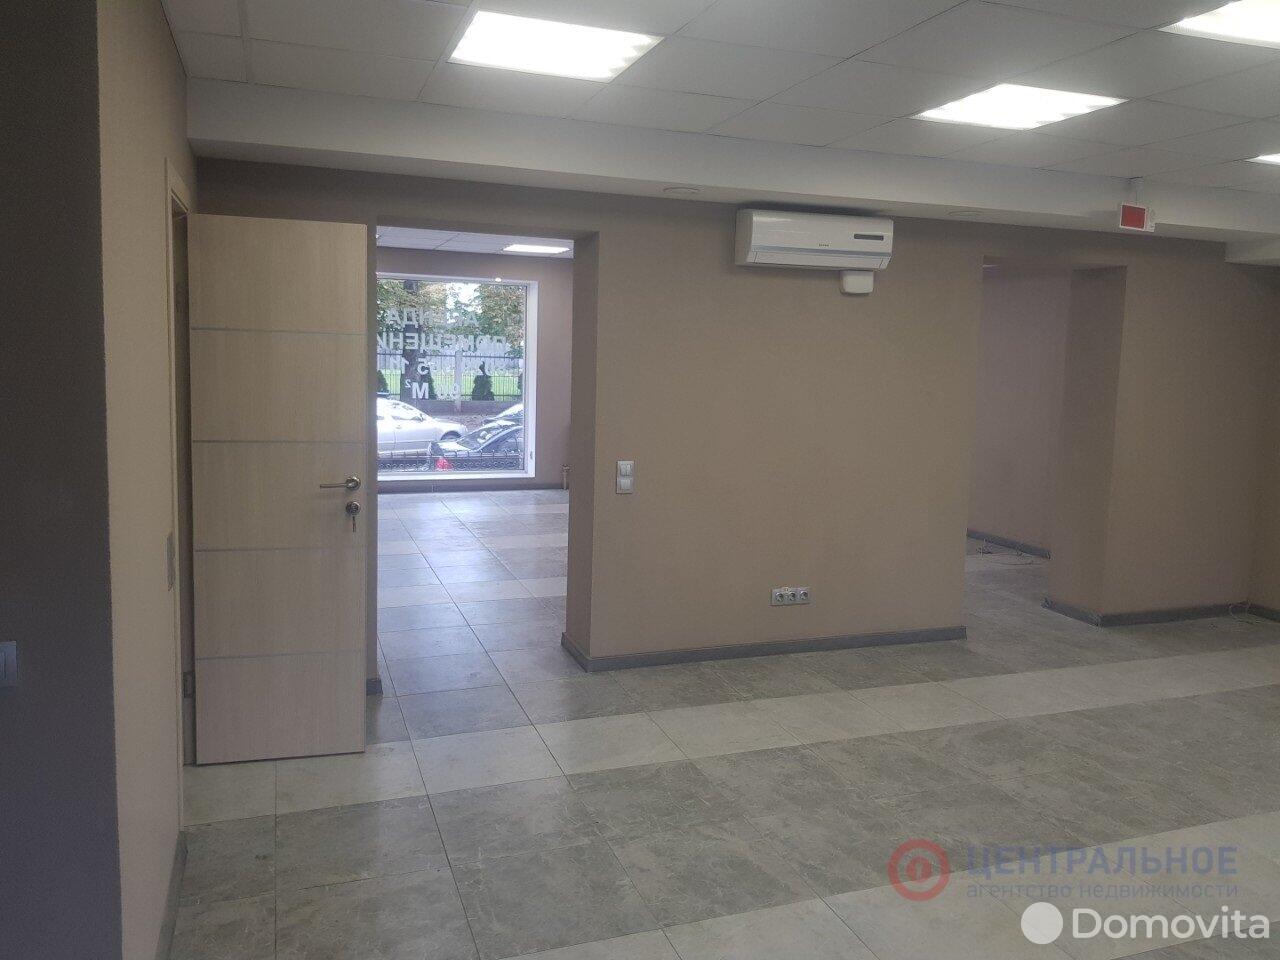 Продажа торгового помещения на ул. Дорошевича, д. 4 в Минске, 250000USD, код 993380 - фото 2